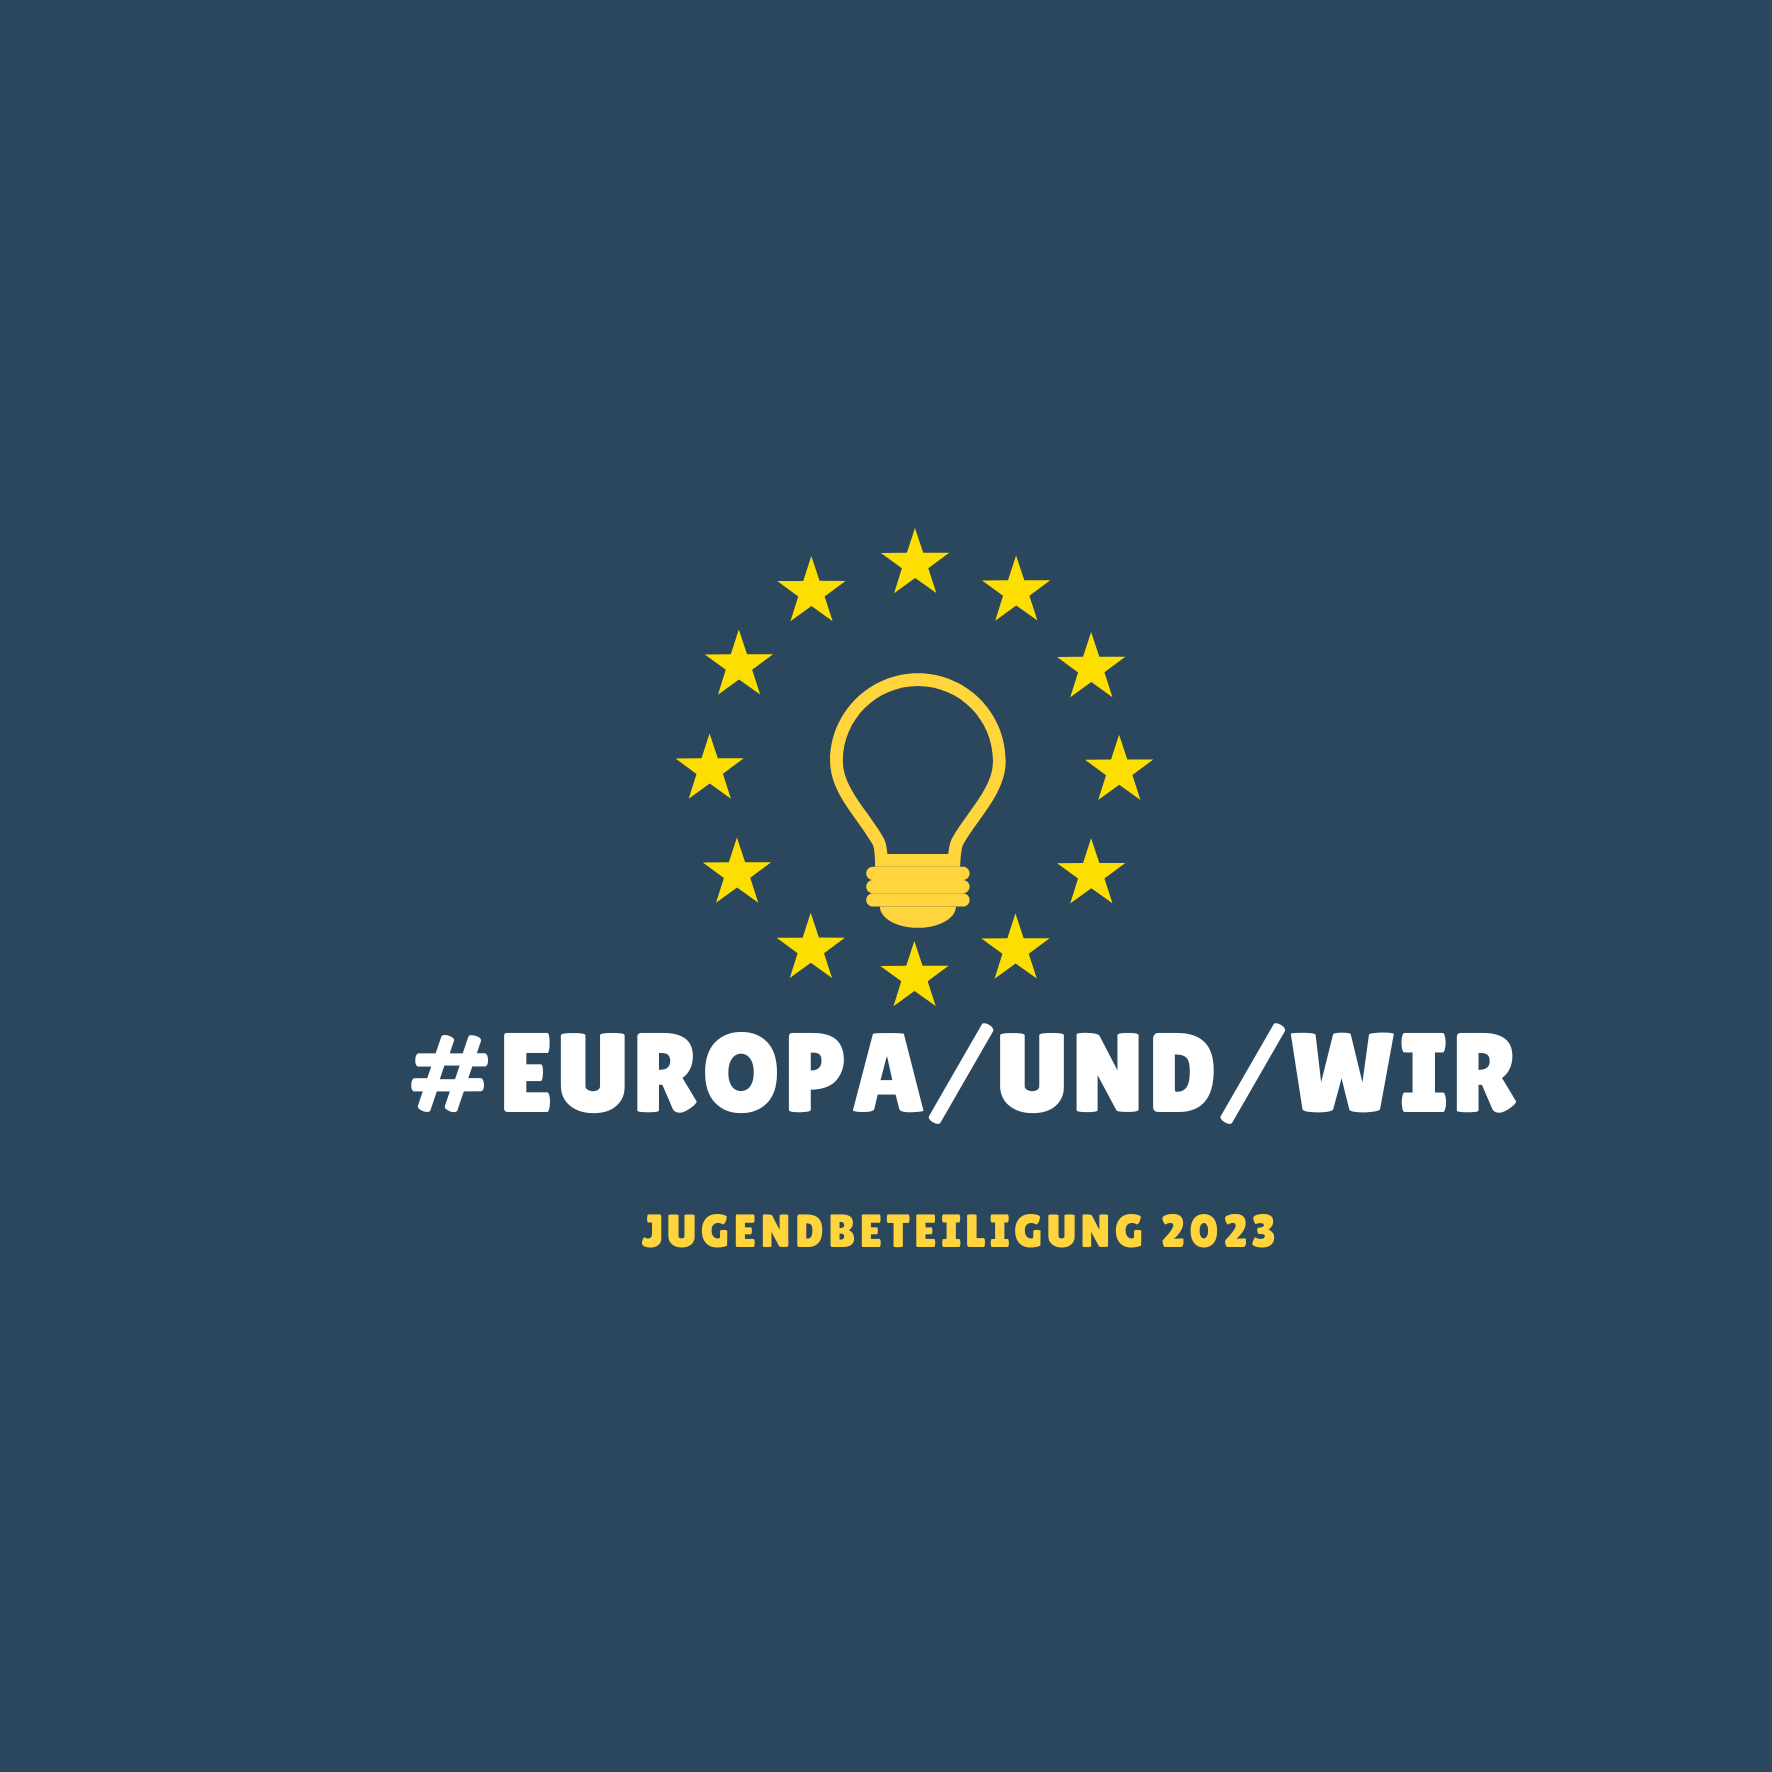 Logo Europa und Du